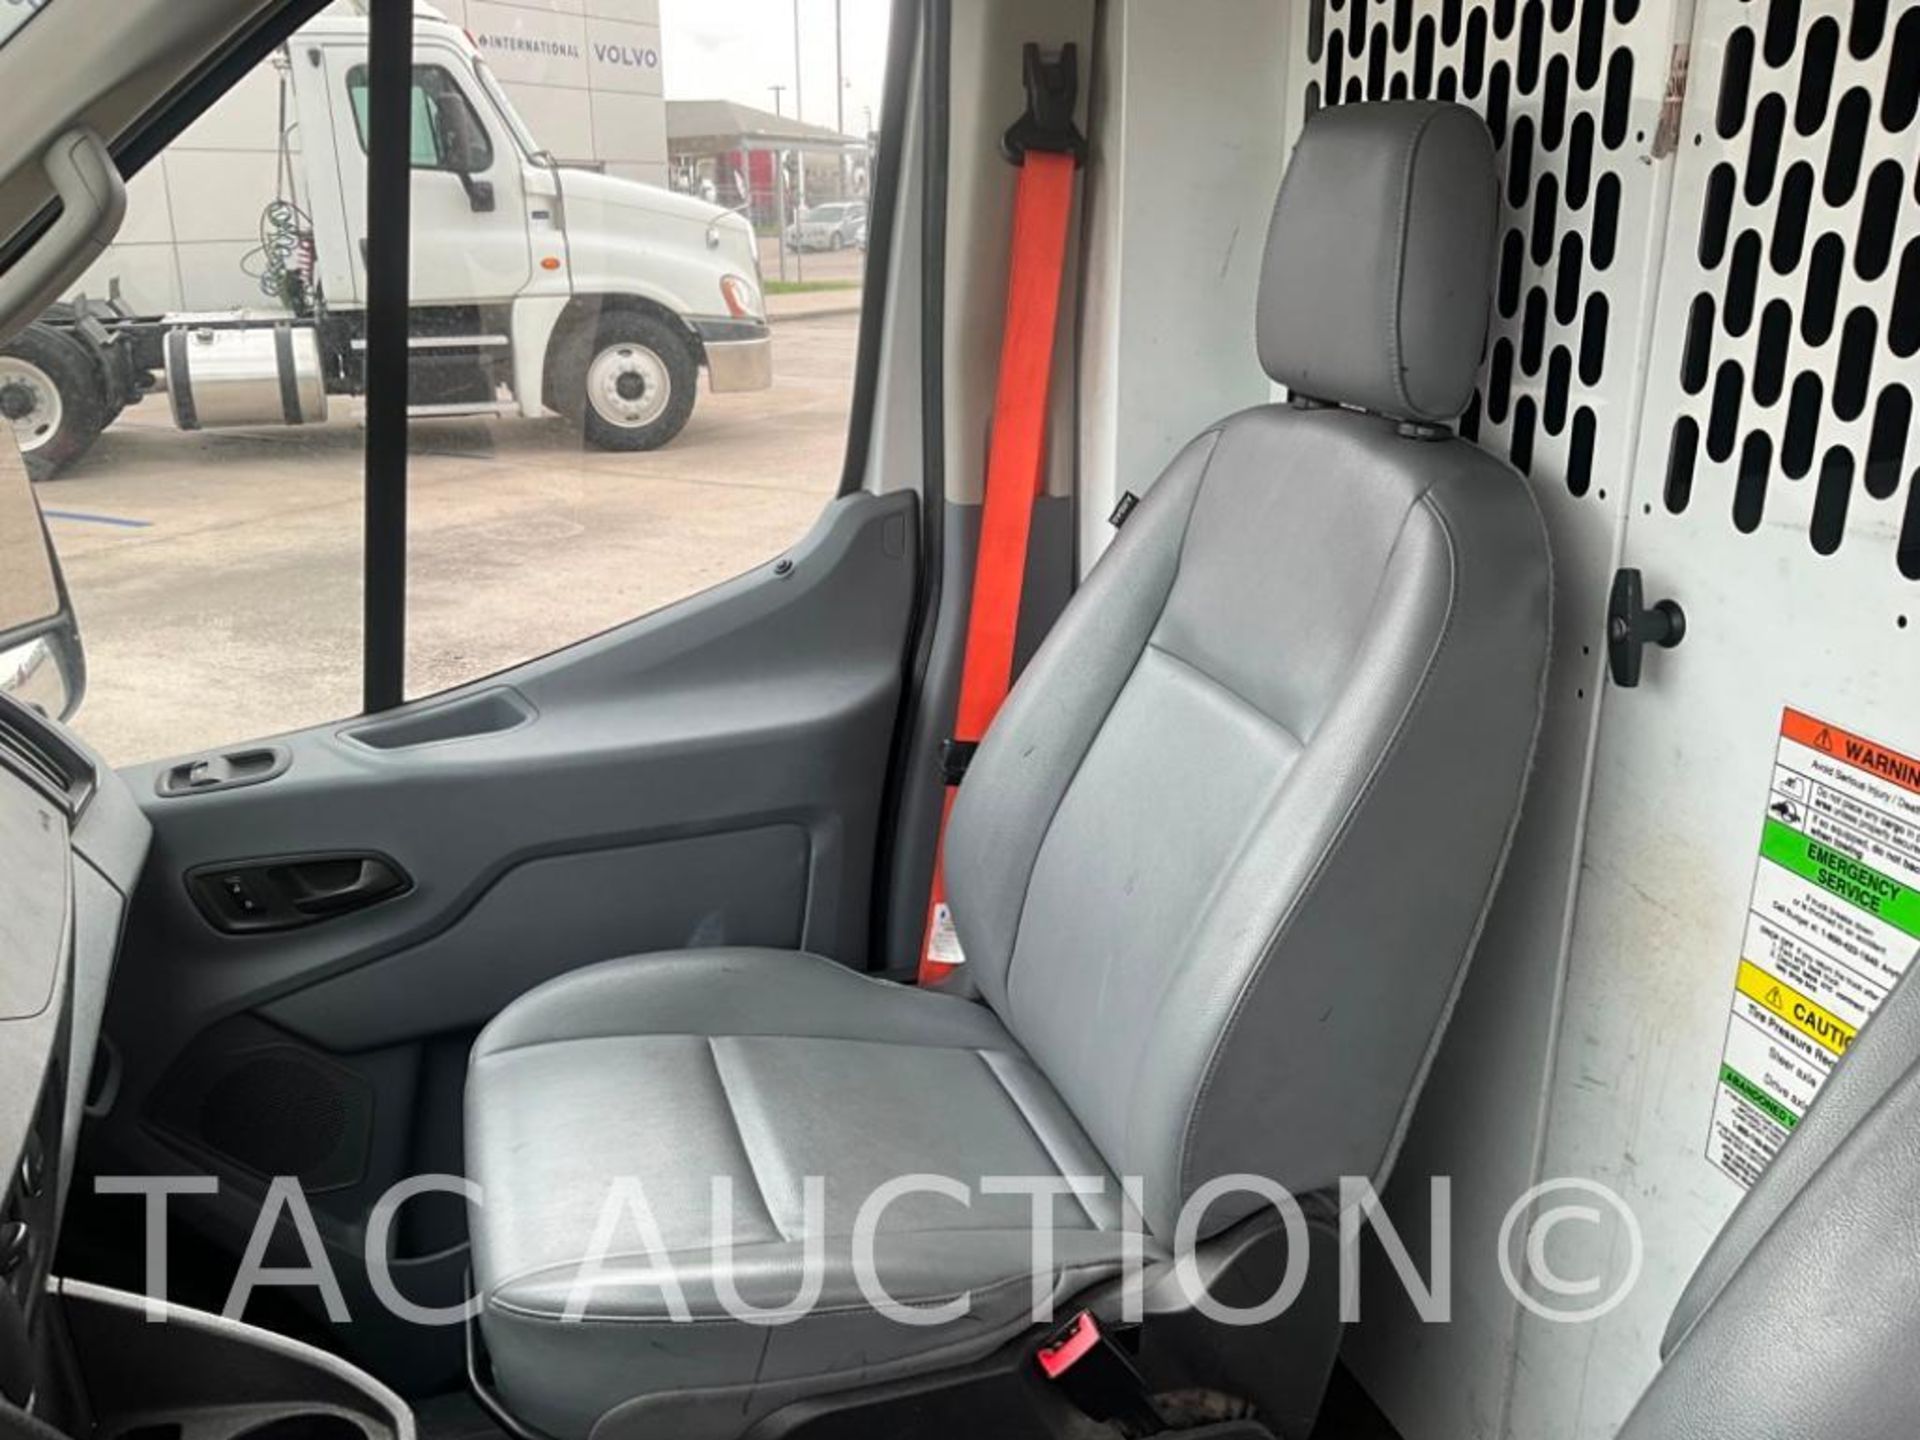 2019 Ford Transit 150 Cargo Van - Image 13 of 56